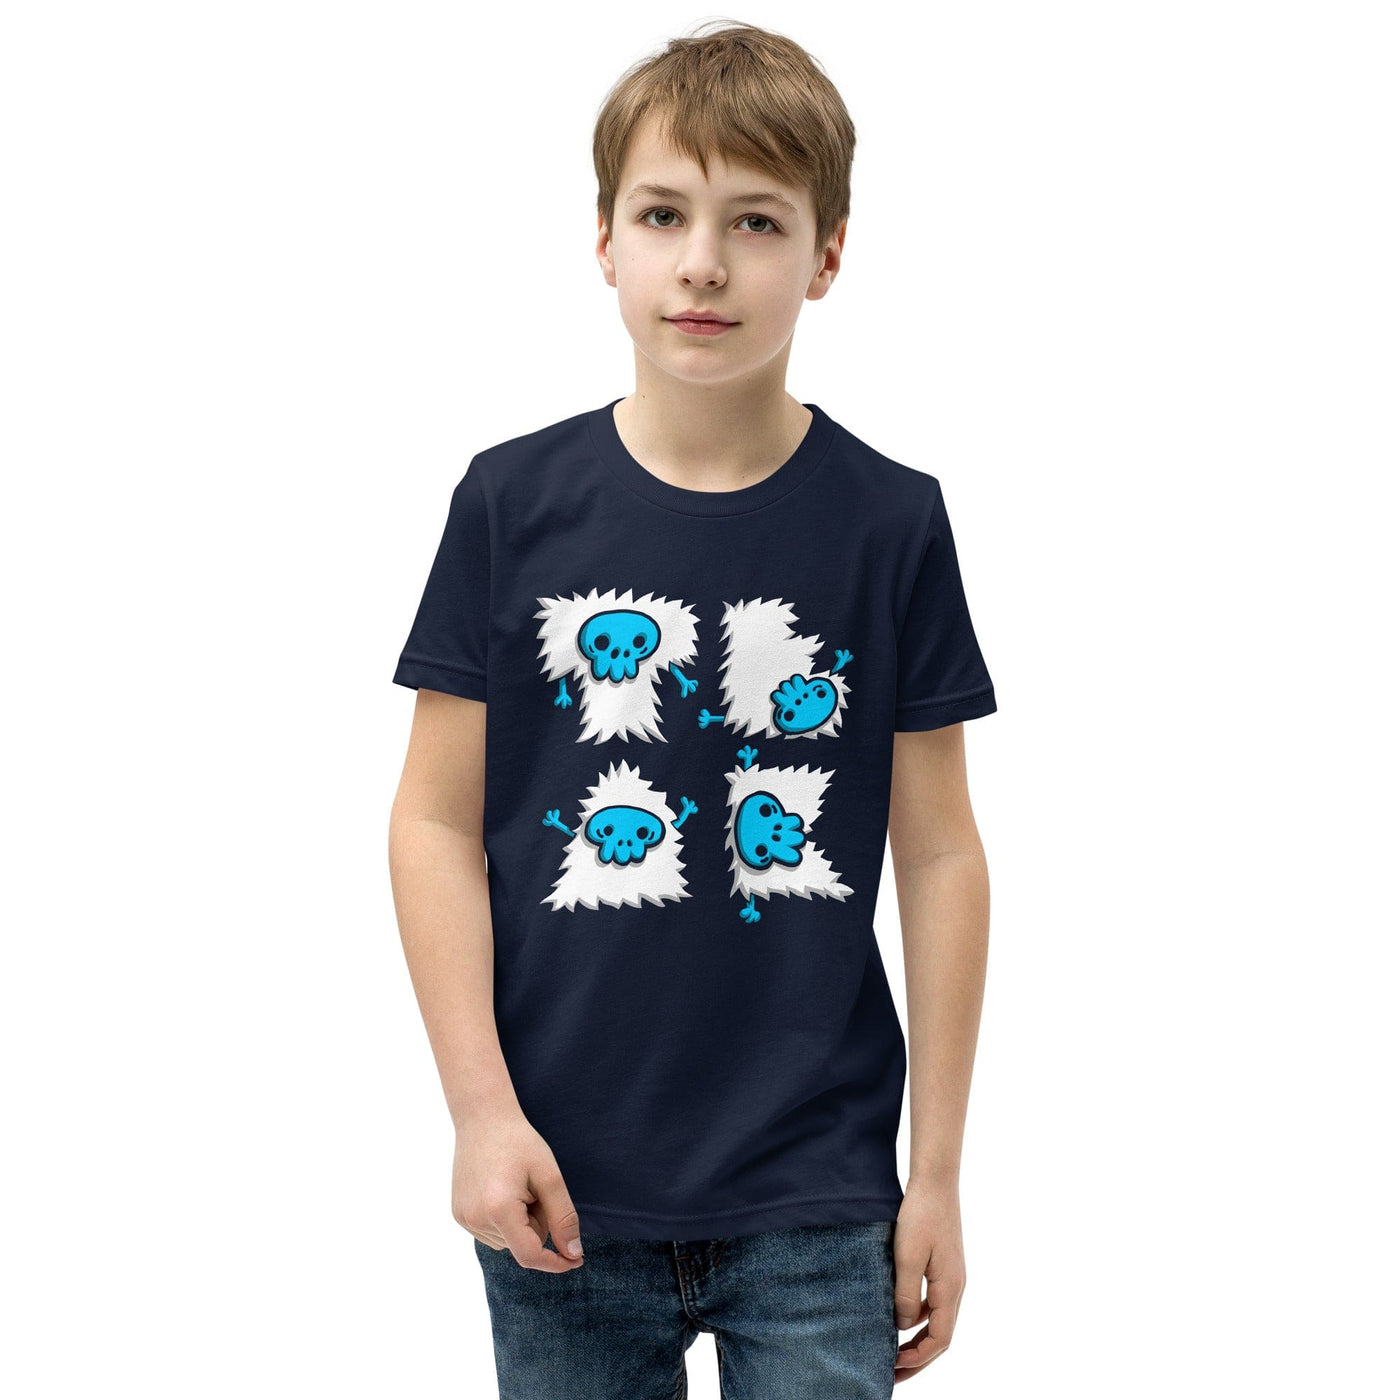 Teak Tuning Pro Fingerboards Teak Yeti Logo Kids T-Shirt